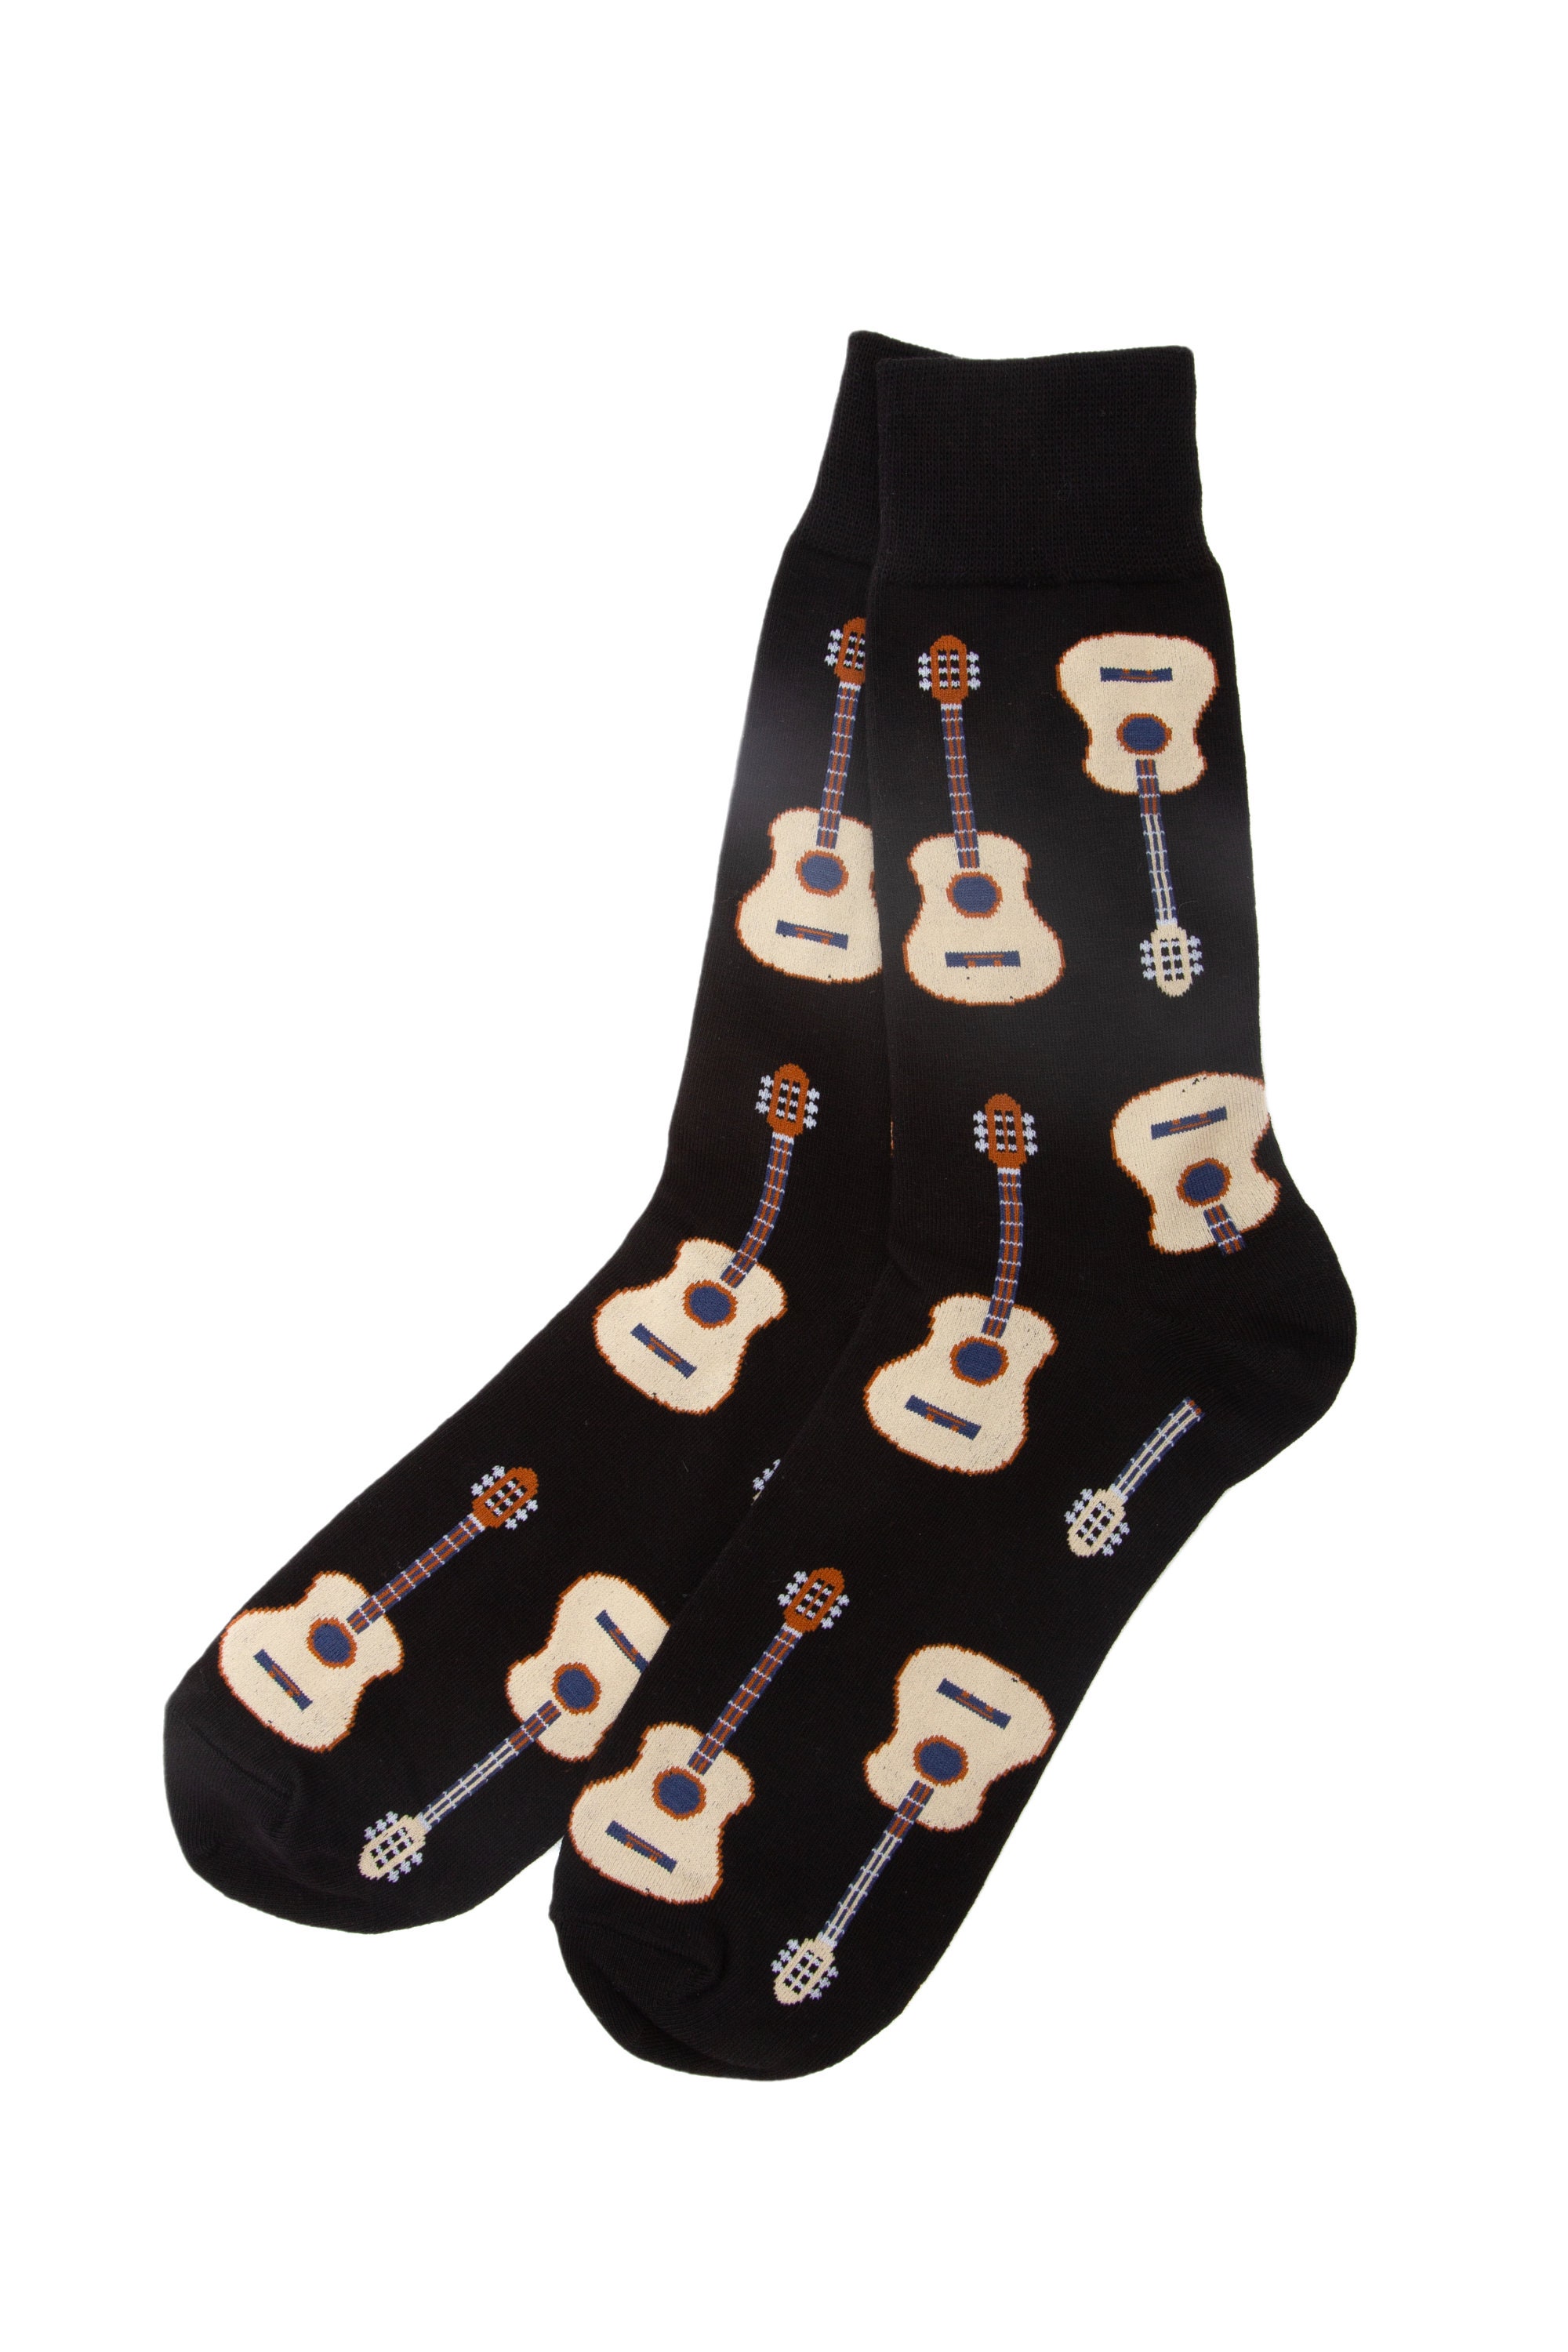 Guitar Socks Happy Guitar Socks Funky Socks Cool Socks - Etsy UK